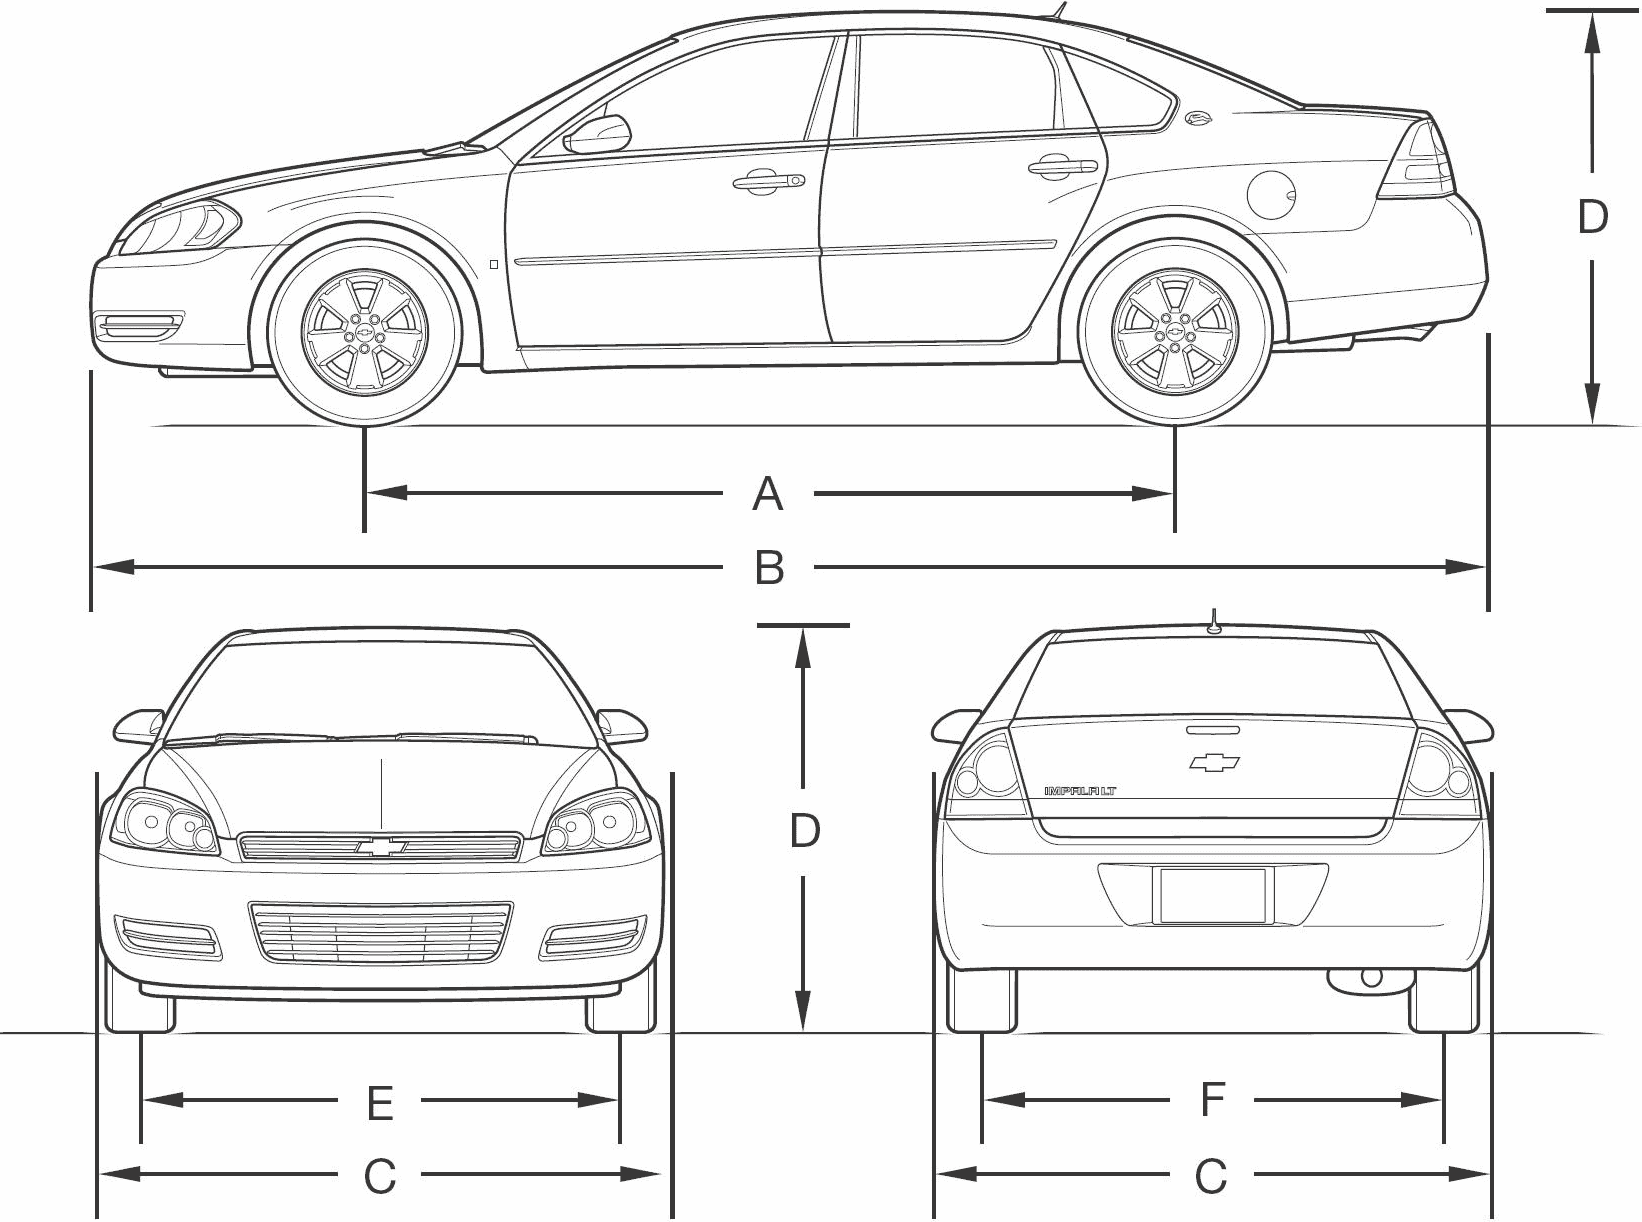 Chevrolet Impala blueprint